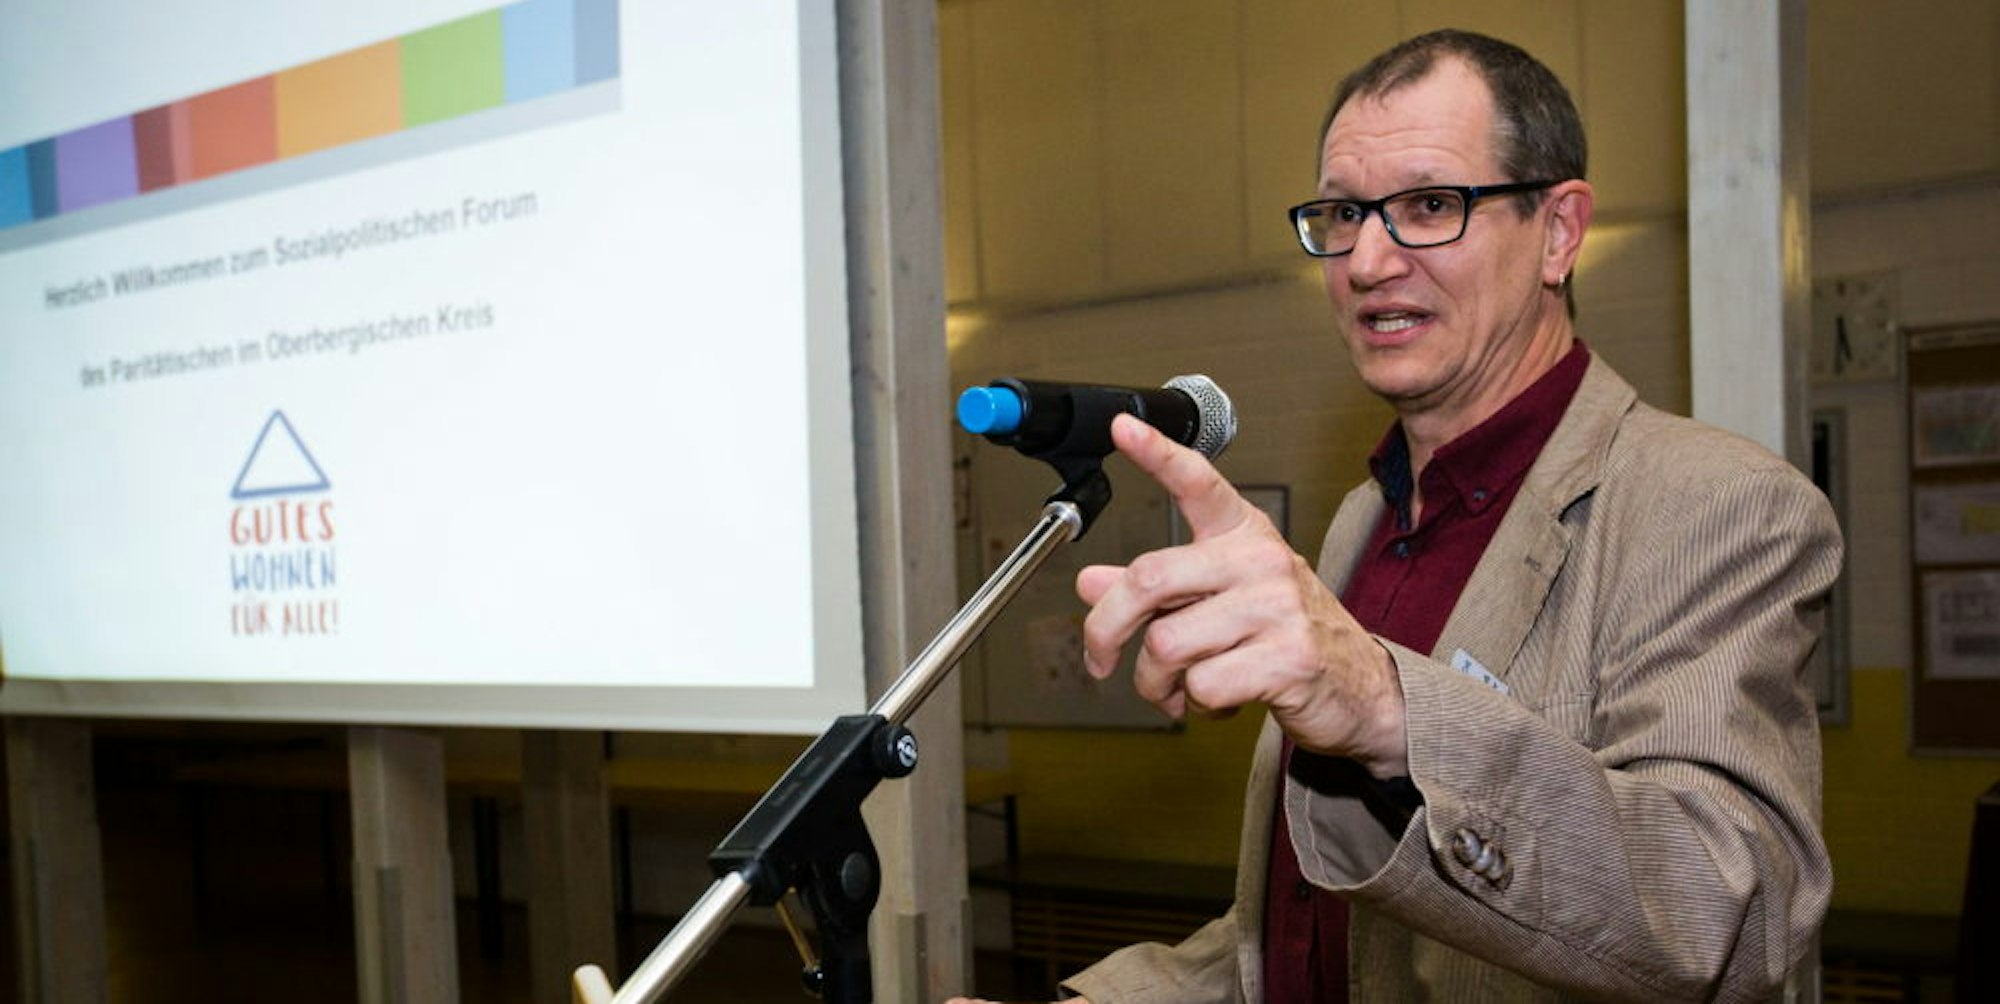 Gegen Vorurteile gegenüber Behinderten wendete sich Andreas Lamsfuß, Vorsitzender des Wohlfahrtsverbands „Der Paritätische“ in Oberberg.